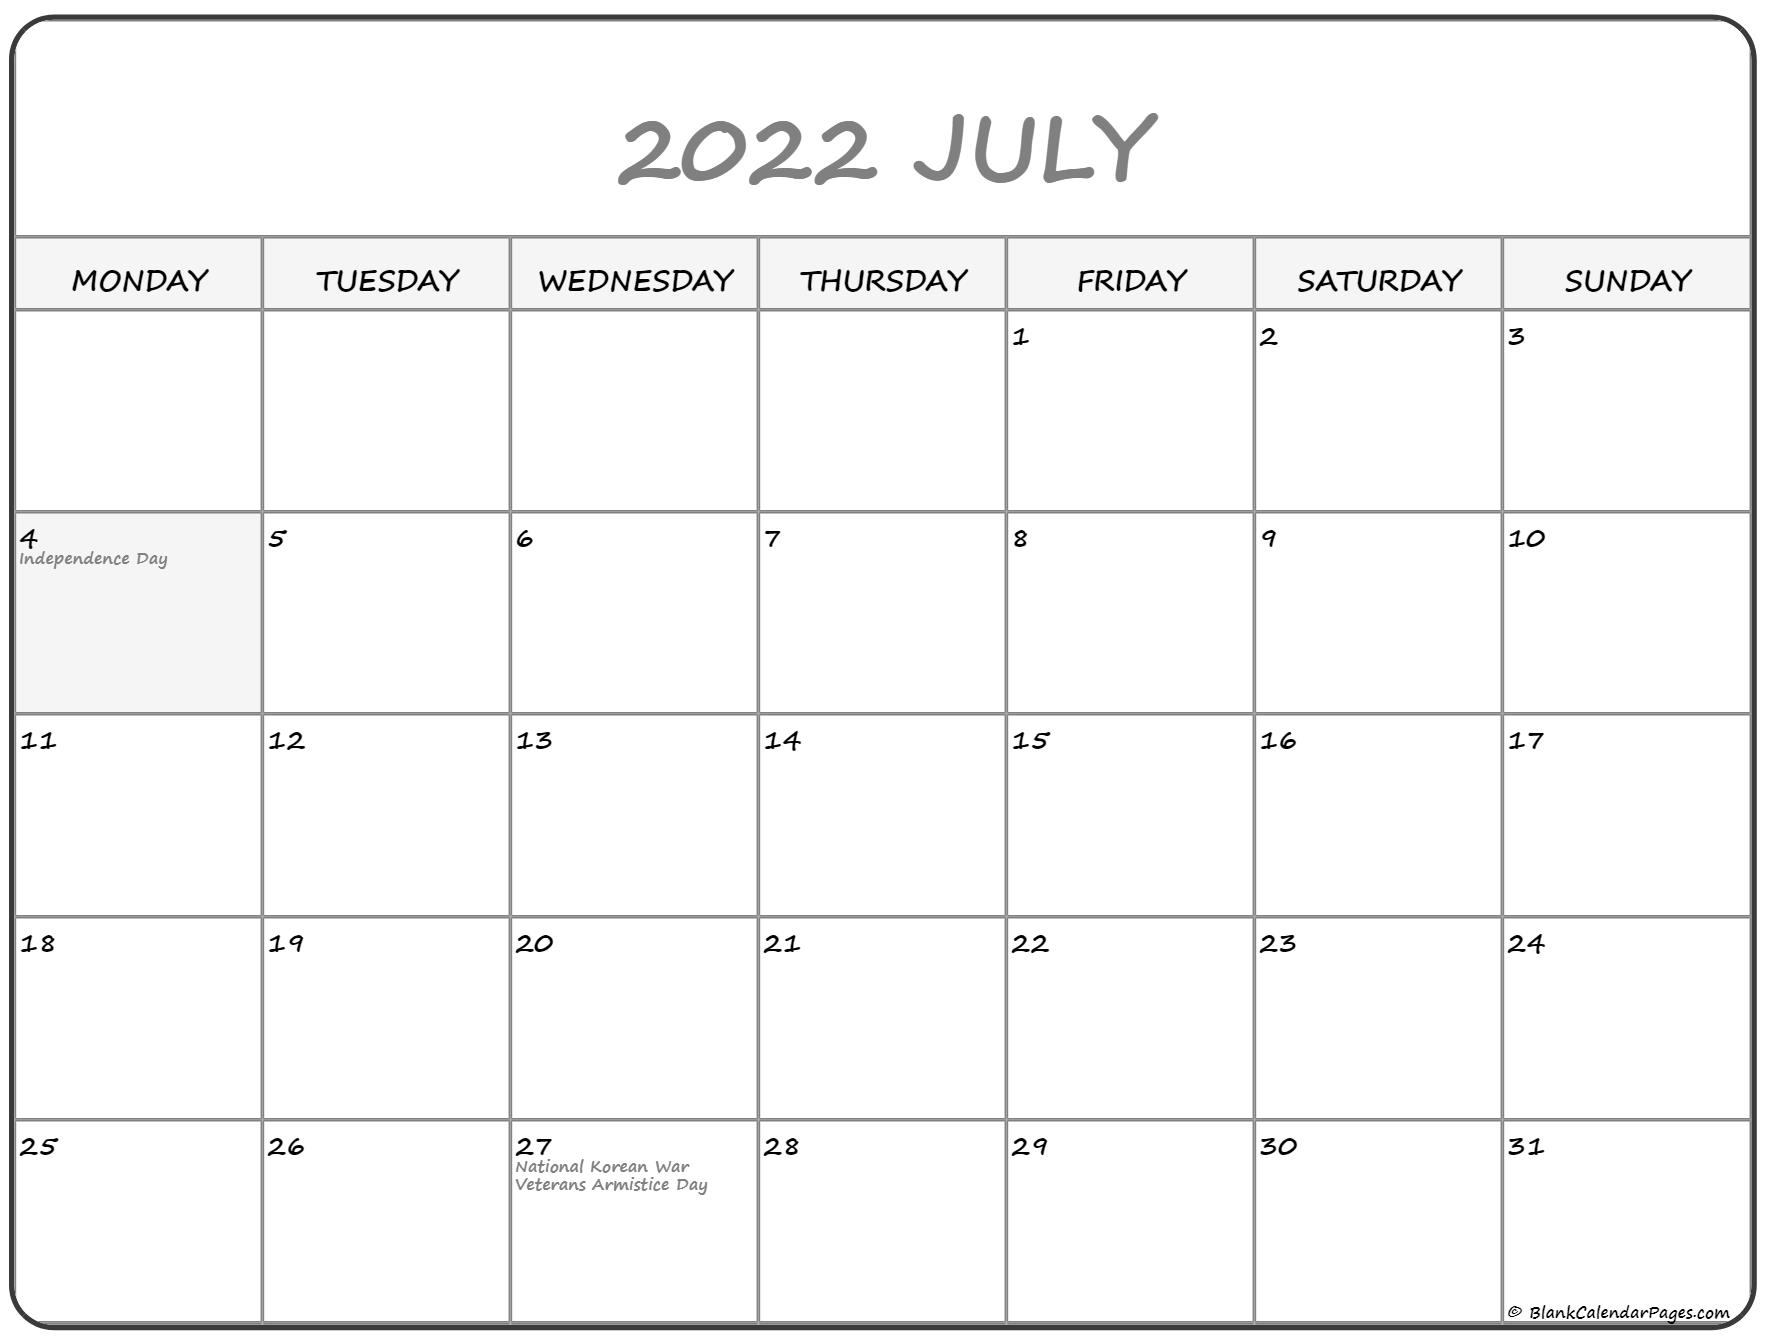 July 2022 Monday Calendar | Monday To Sunday